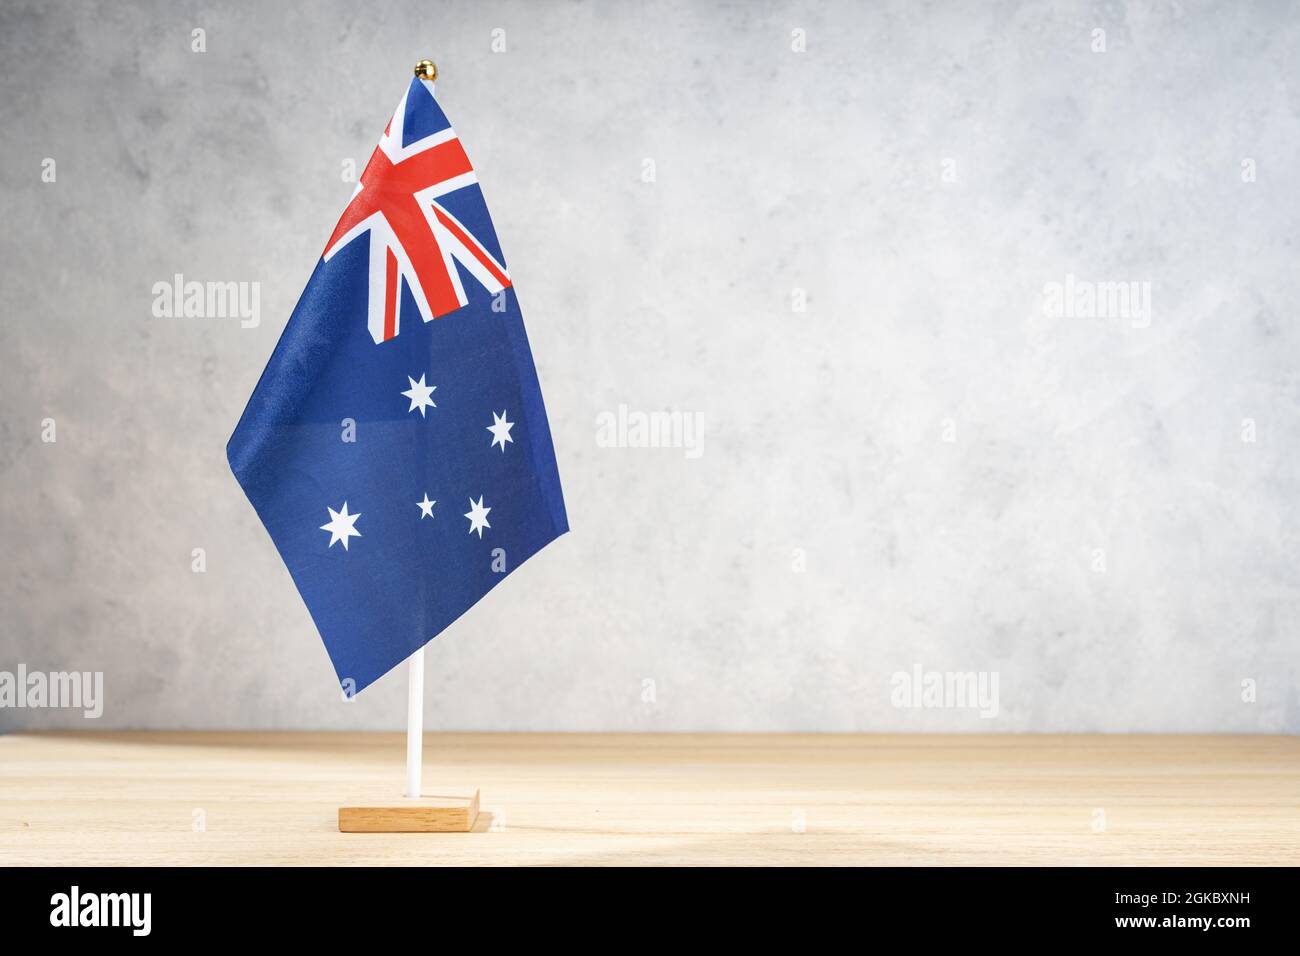 Drapeau de table australien sur un mur blanc texturé. Espace de copie pour le texte, les conceptions ou les mises en plan Banque D'Images